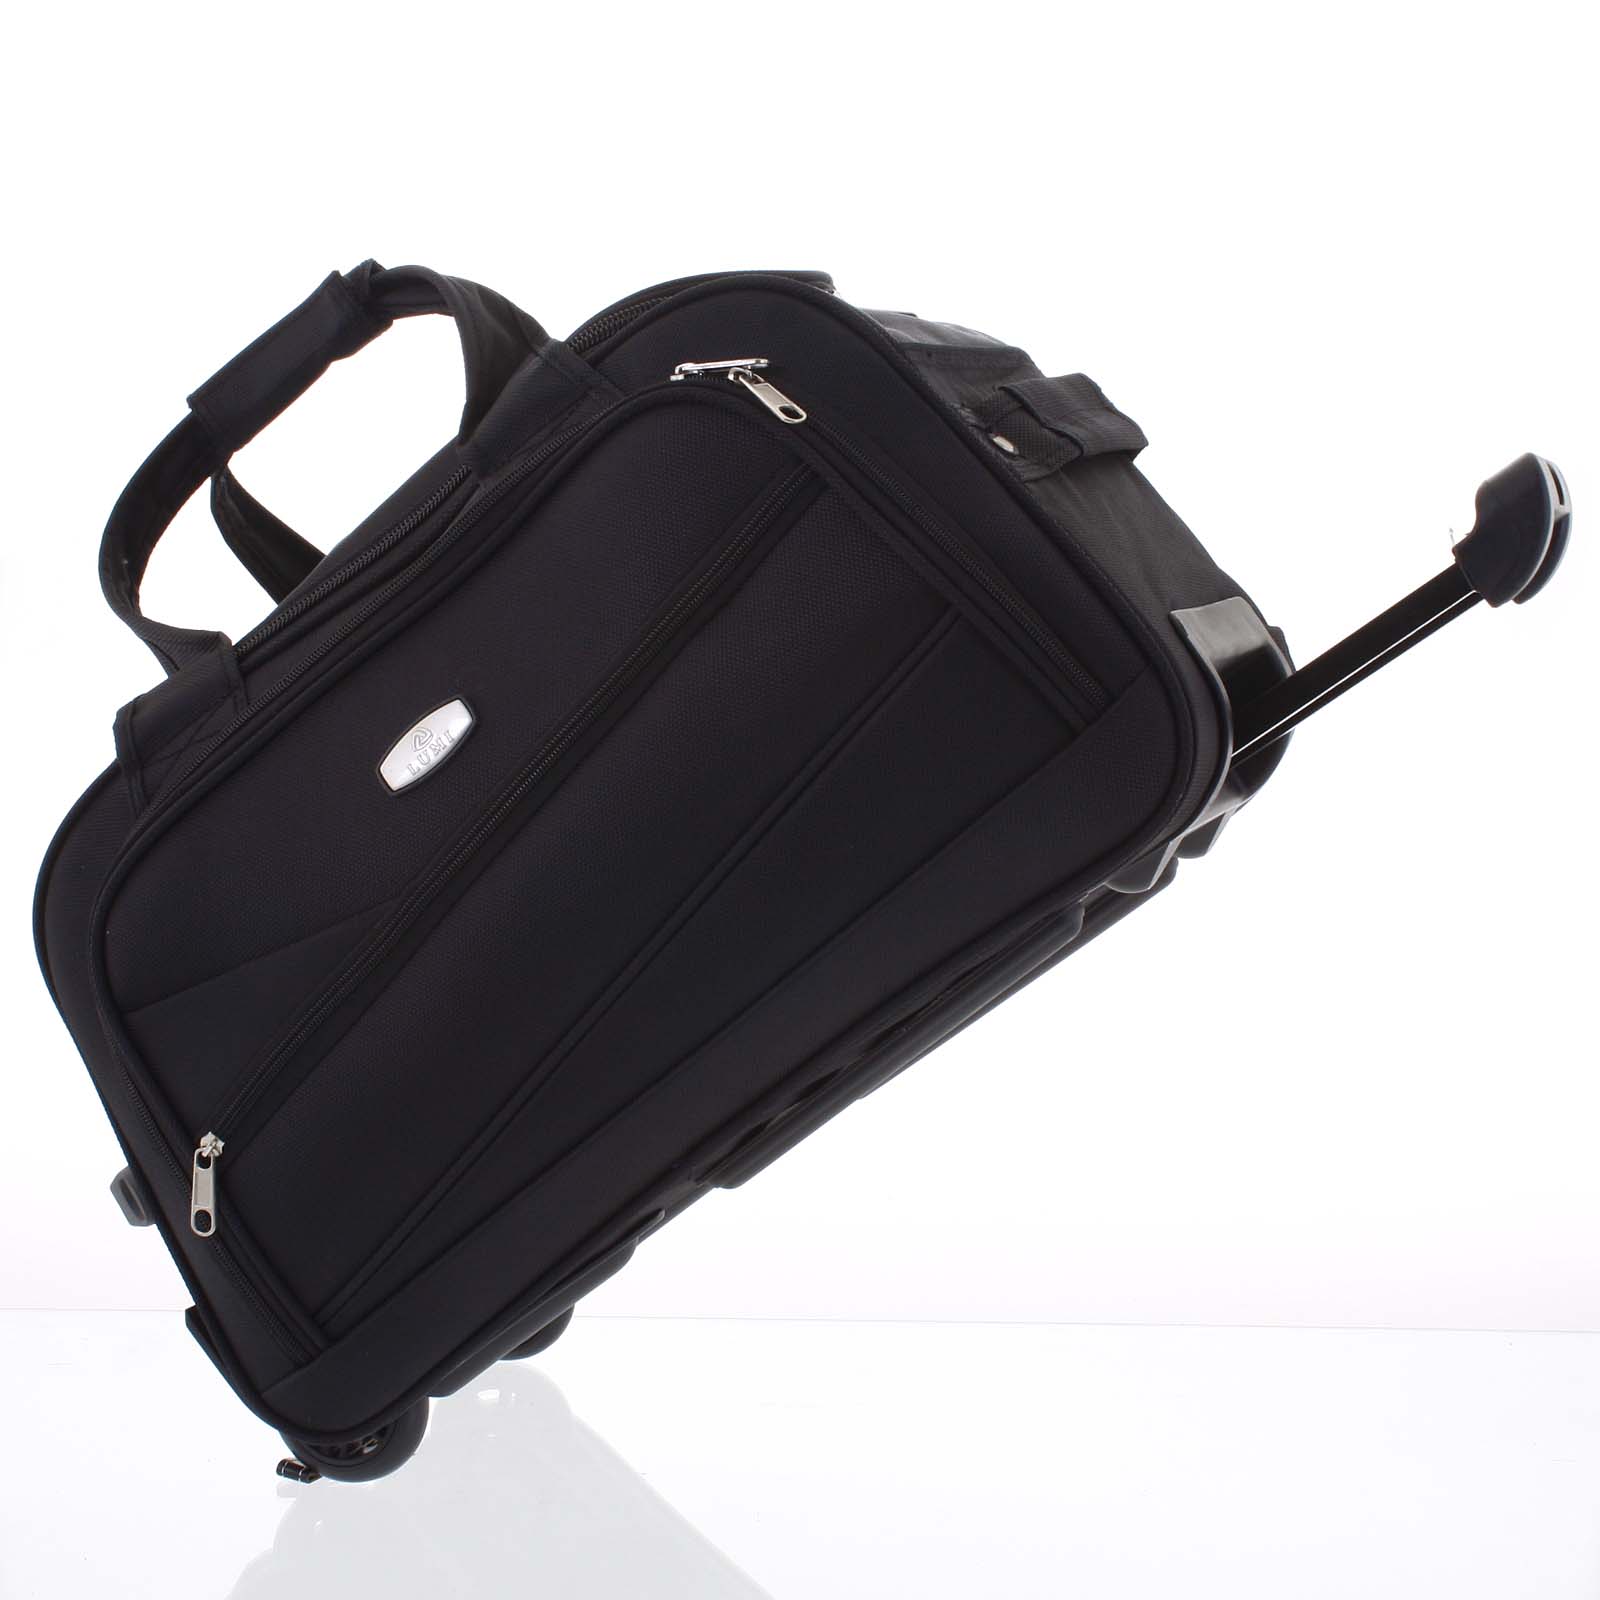 Černá cestovní taška na kolečkách - Lumi Sakk S